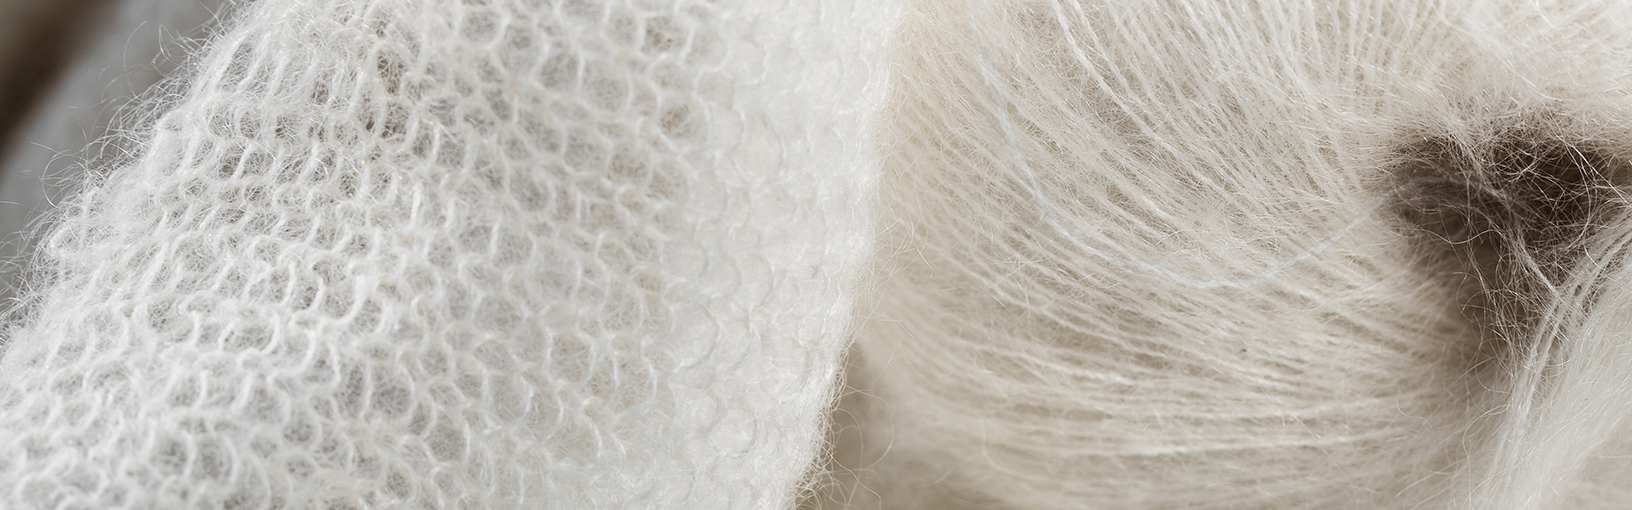 Garn av høy kvalitet til strikking, hekling og toving LANA GROSSA<br> ull & garn